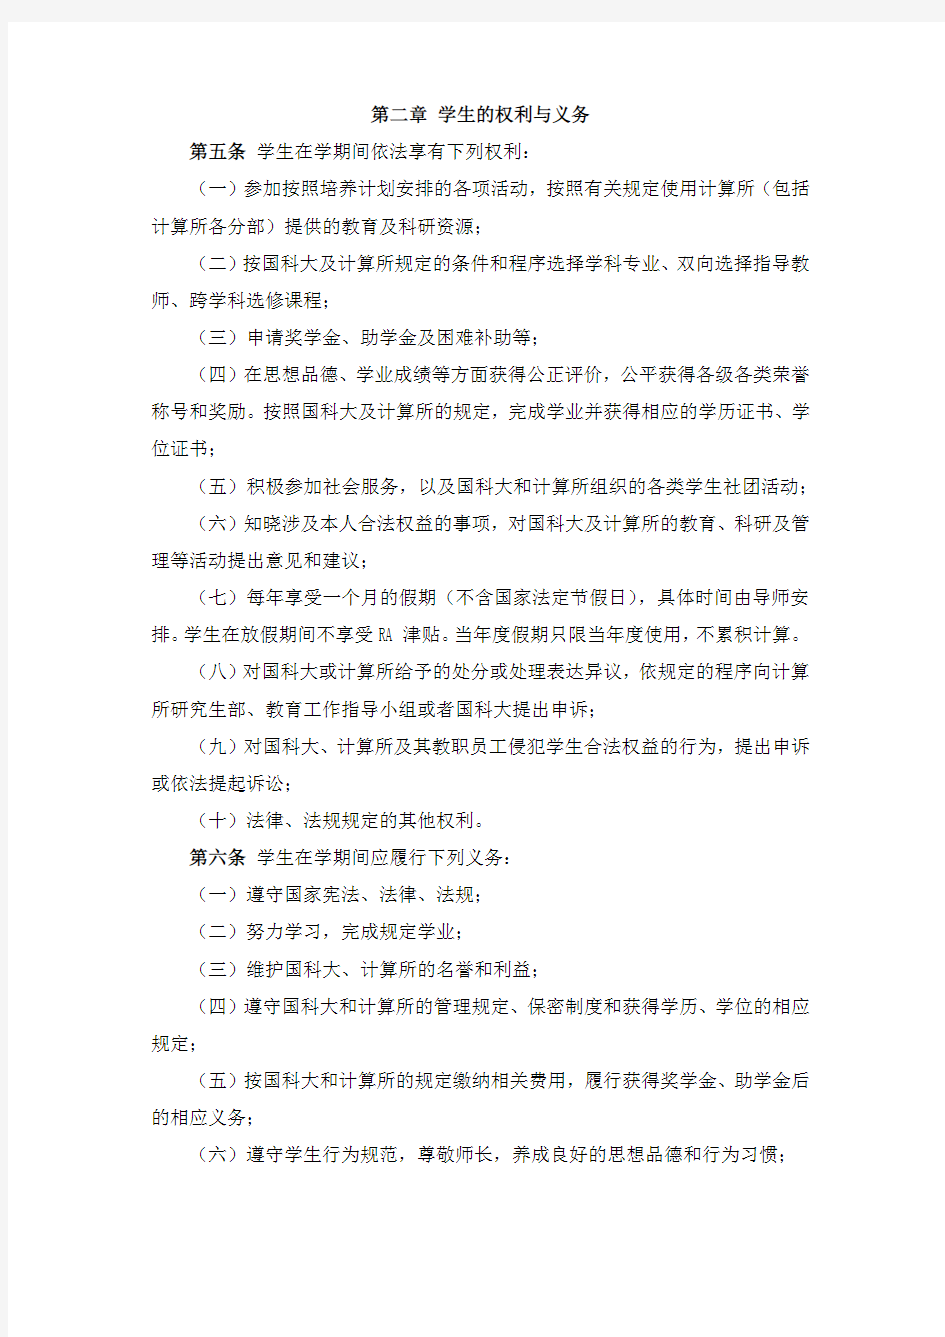 中国科学院计算技术研究所学生管理规定